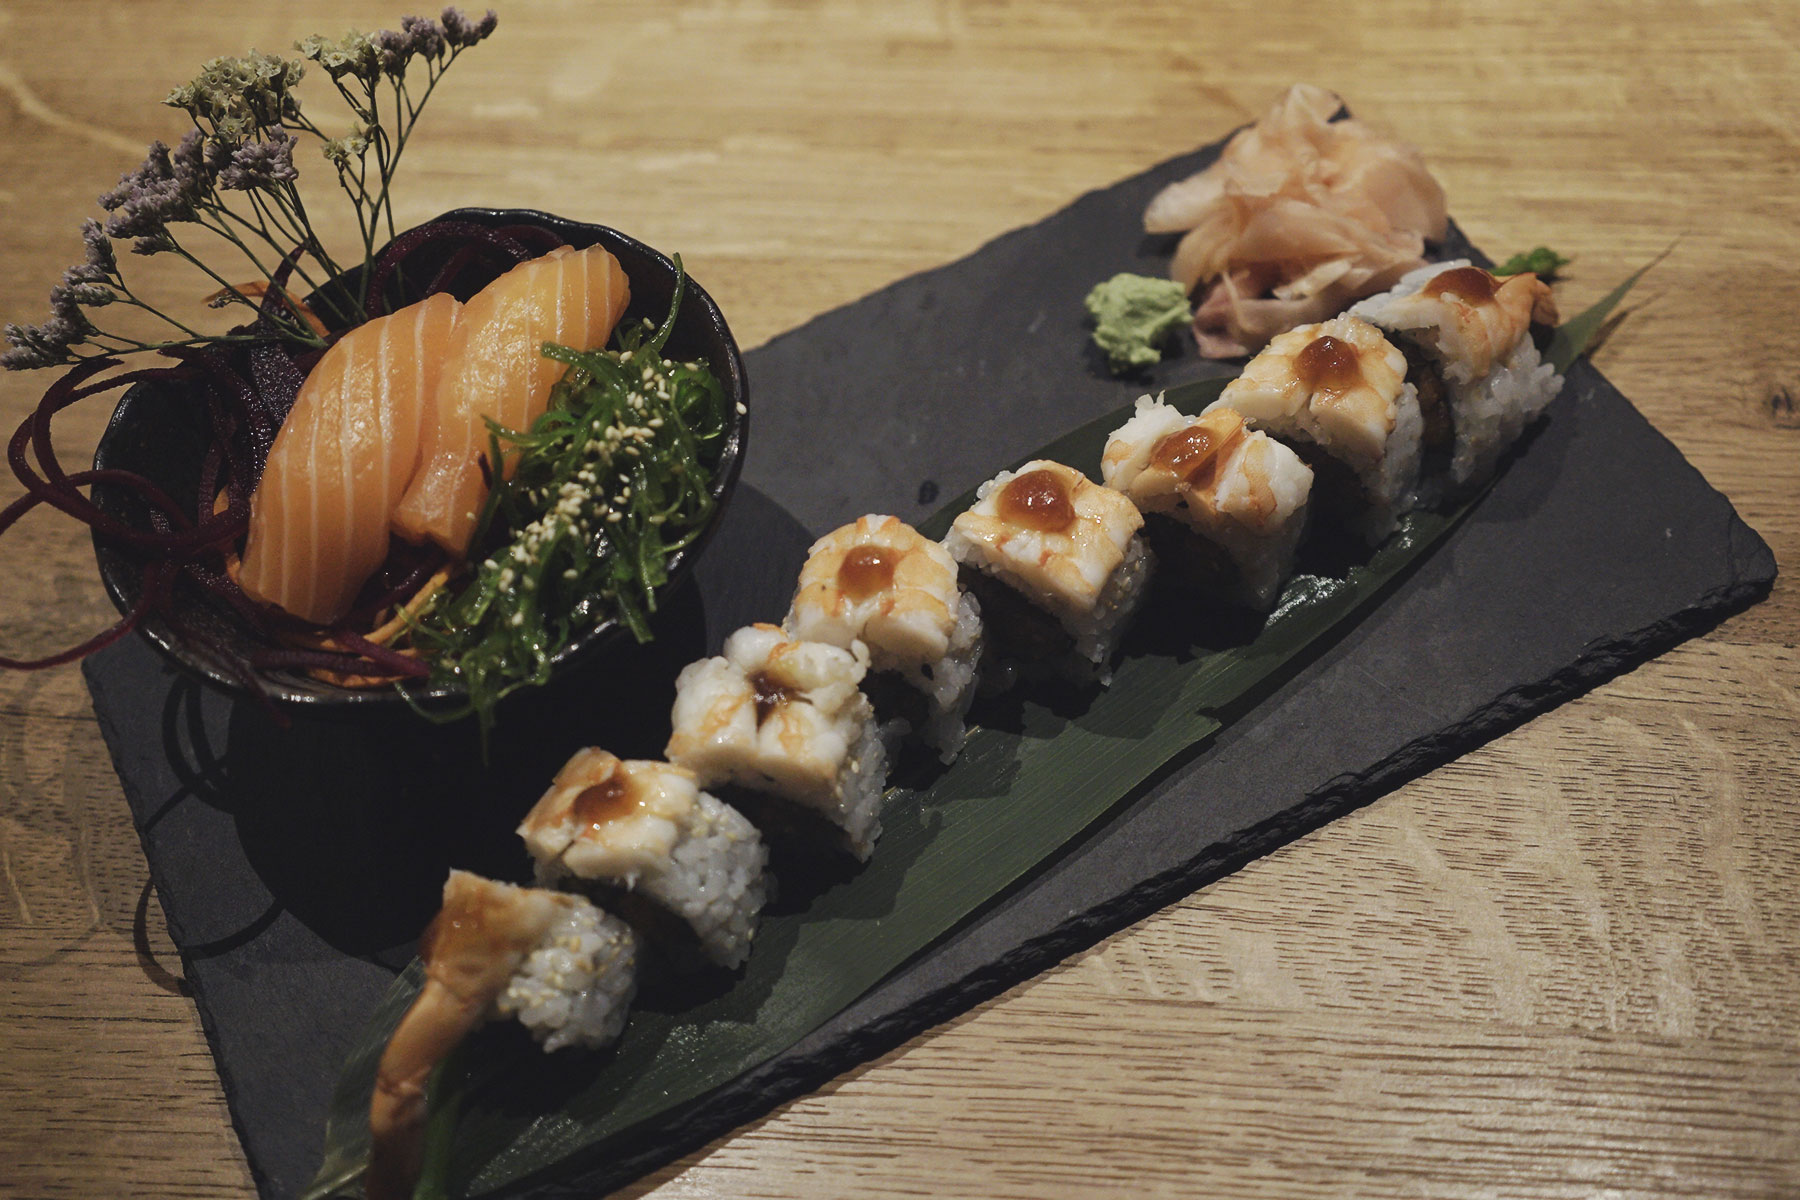 Geheimtipp Tipp Koeln Sushi Rahmen Nudeln Japanisch Asiatisch Essen gehen